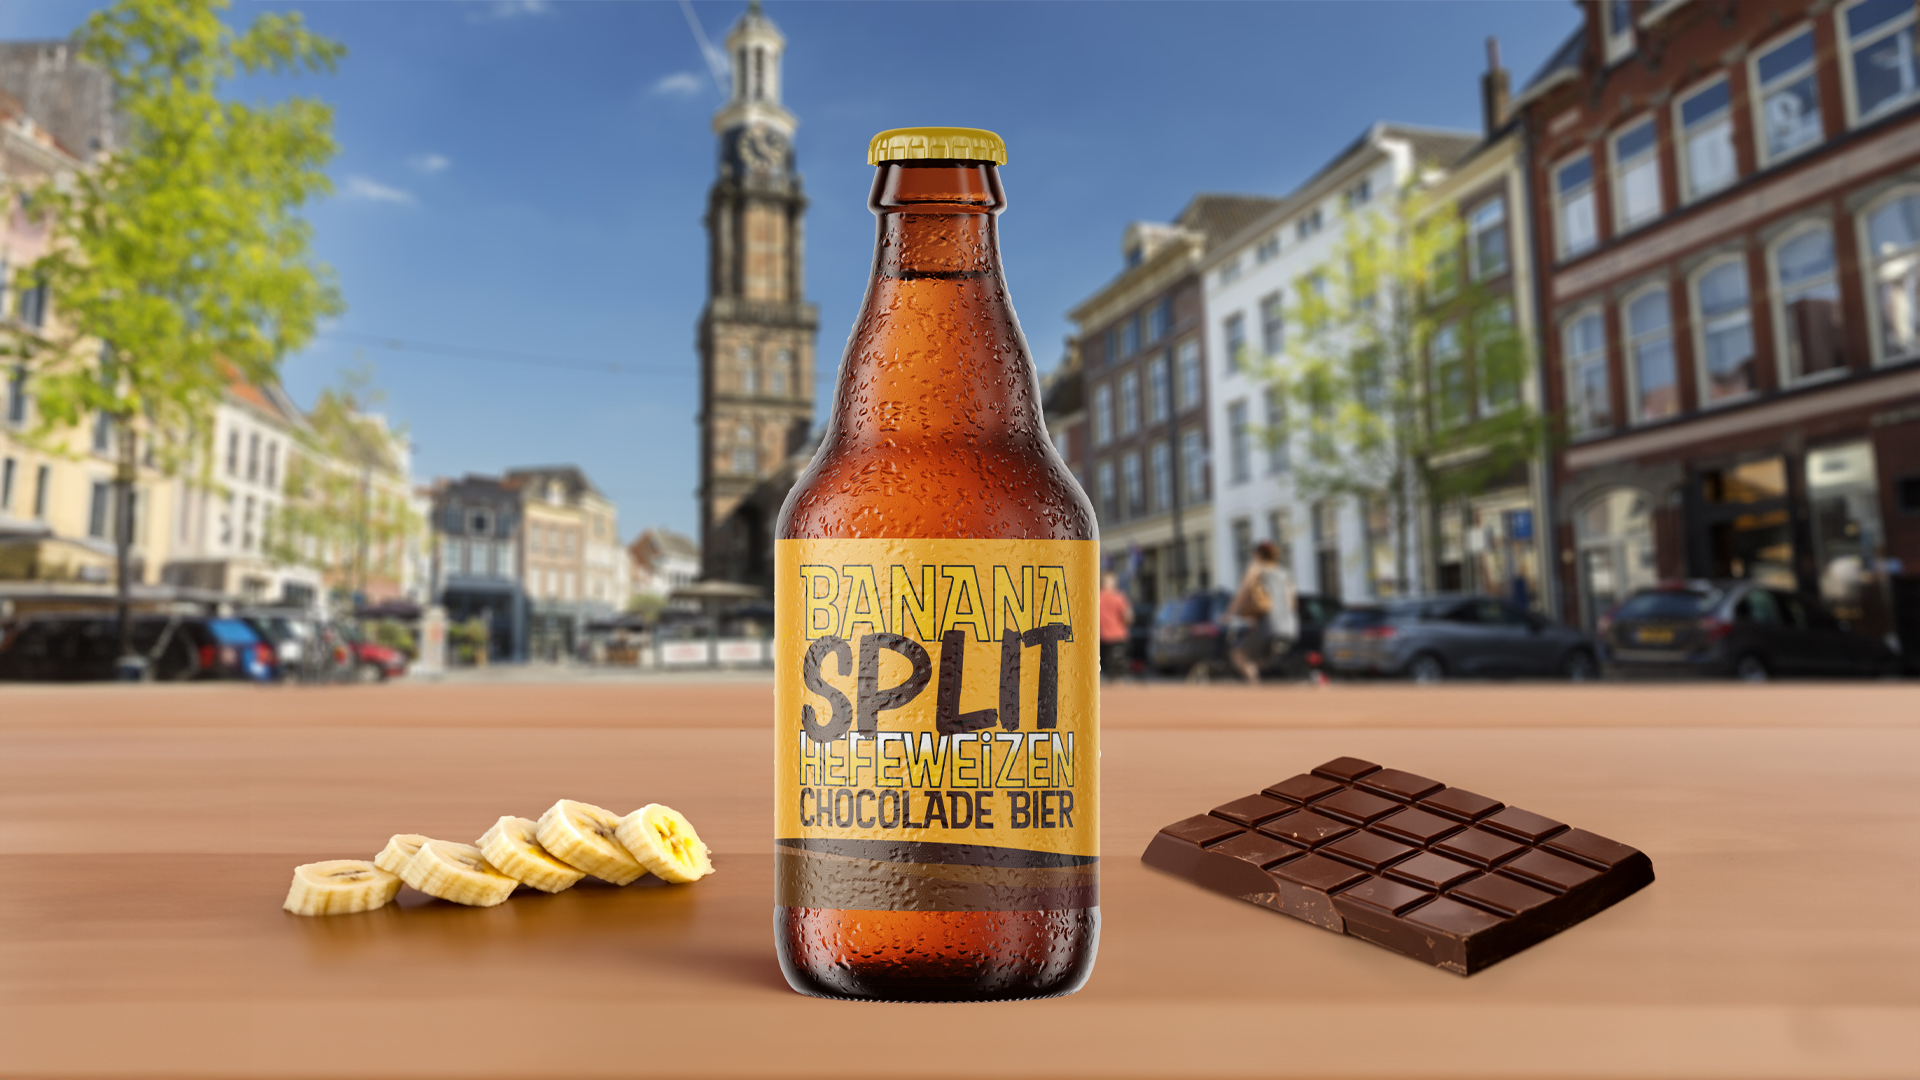 Chocolade Festival Zutphen - Chocobier Hanzereep - Lutim - Wij maken jouw communicatie!